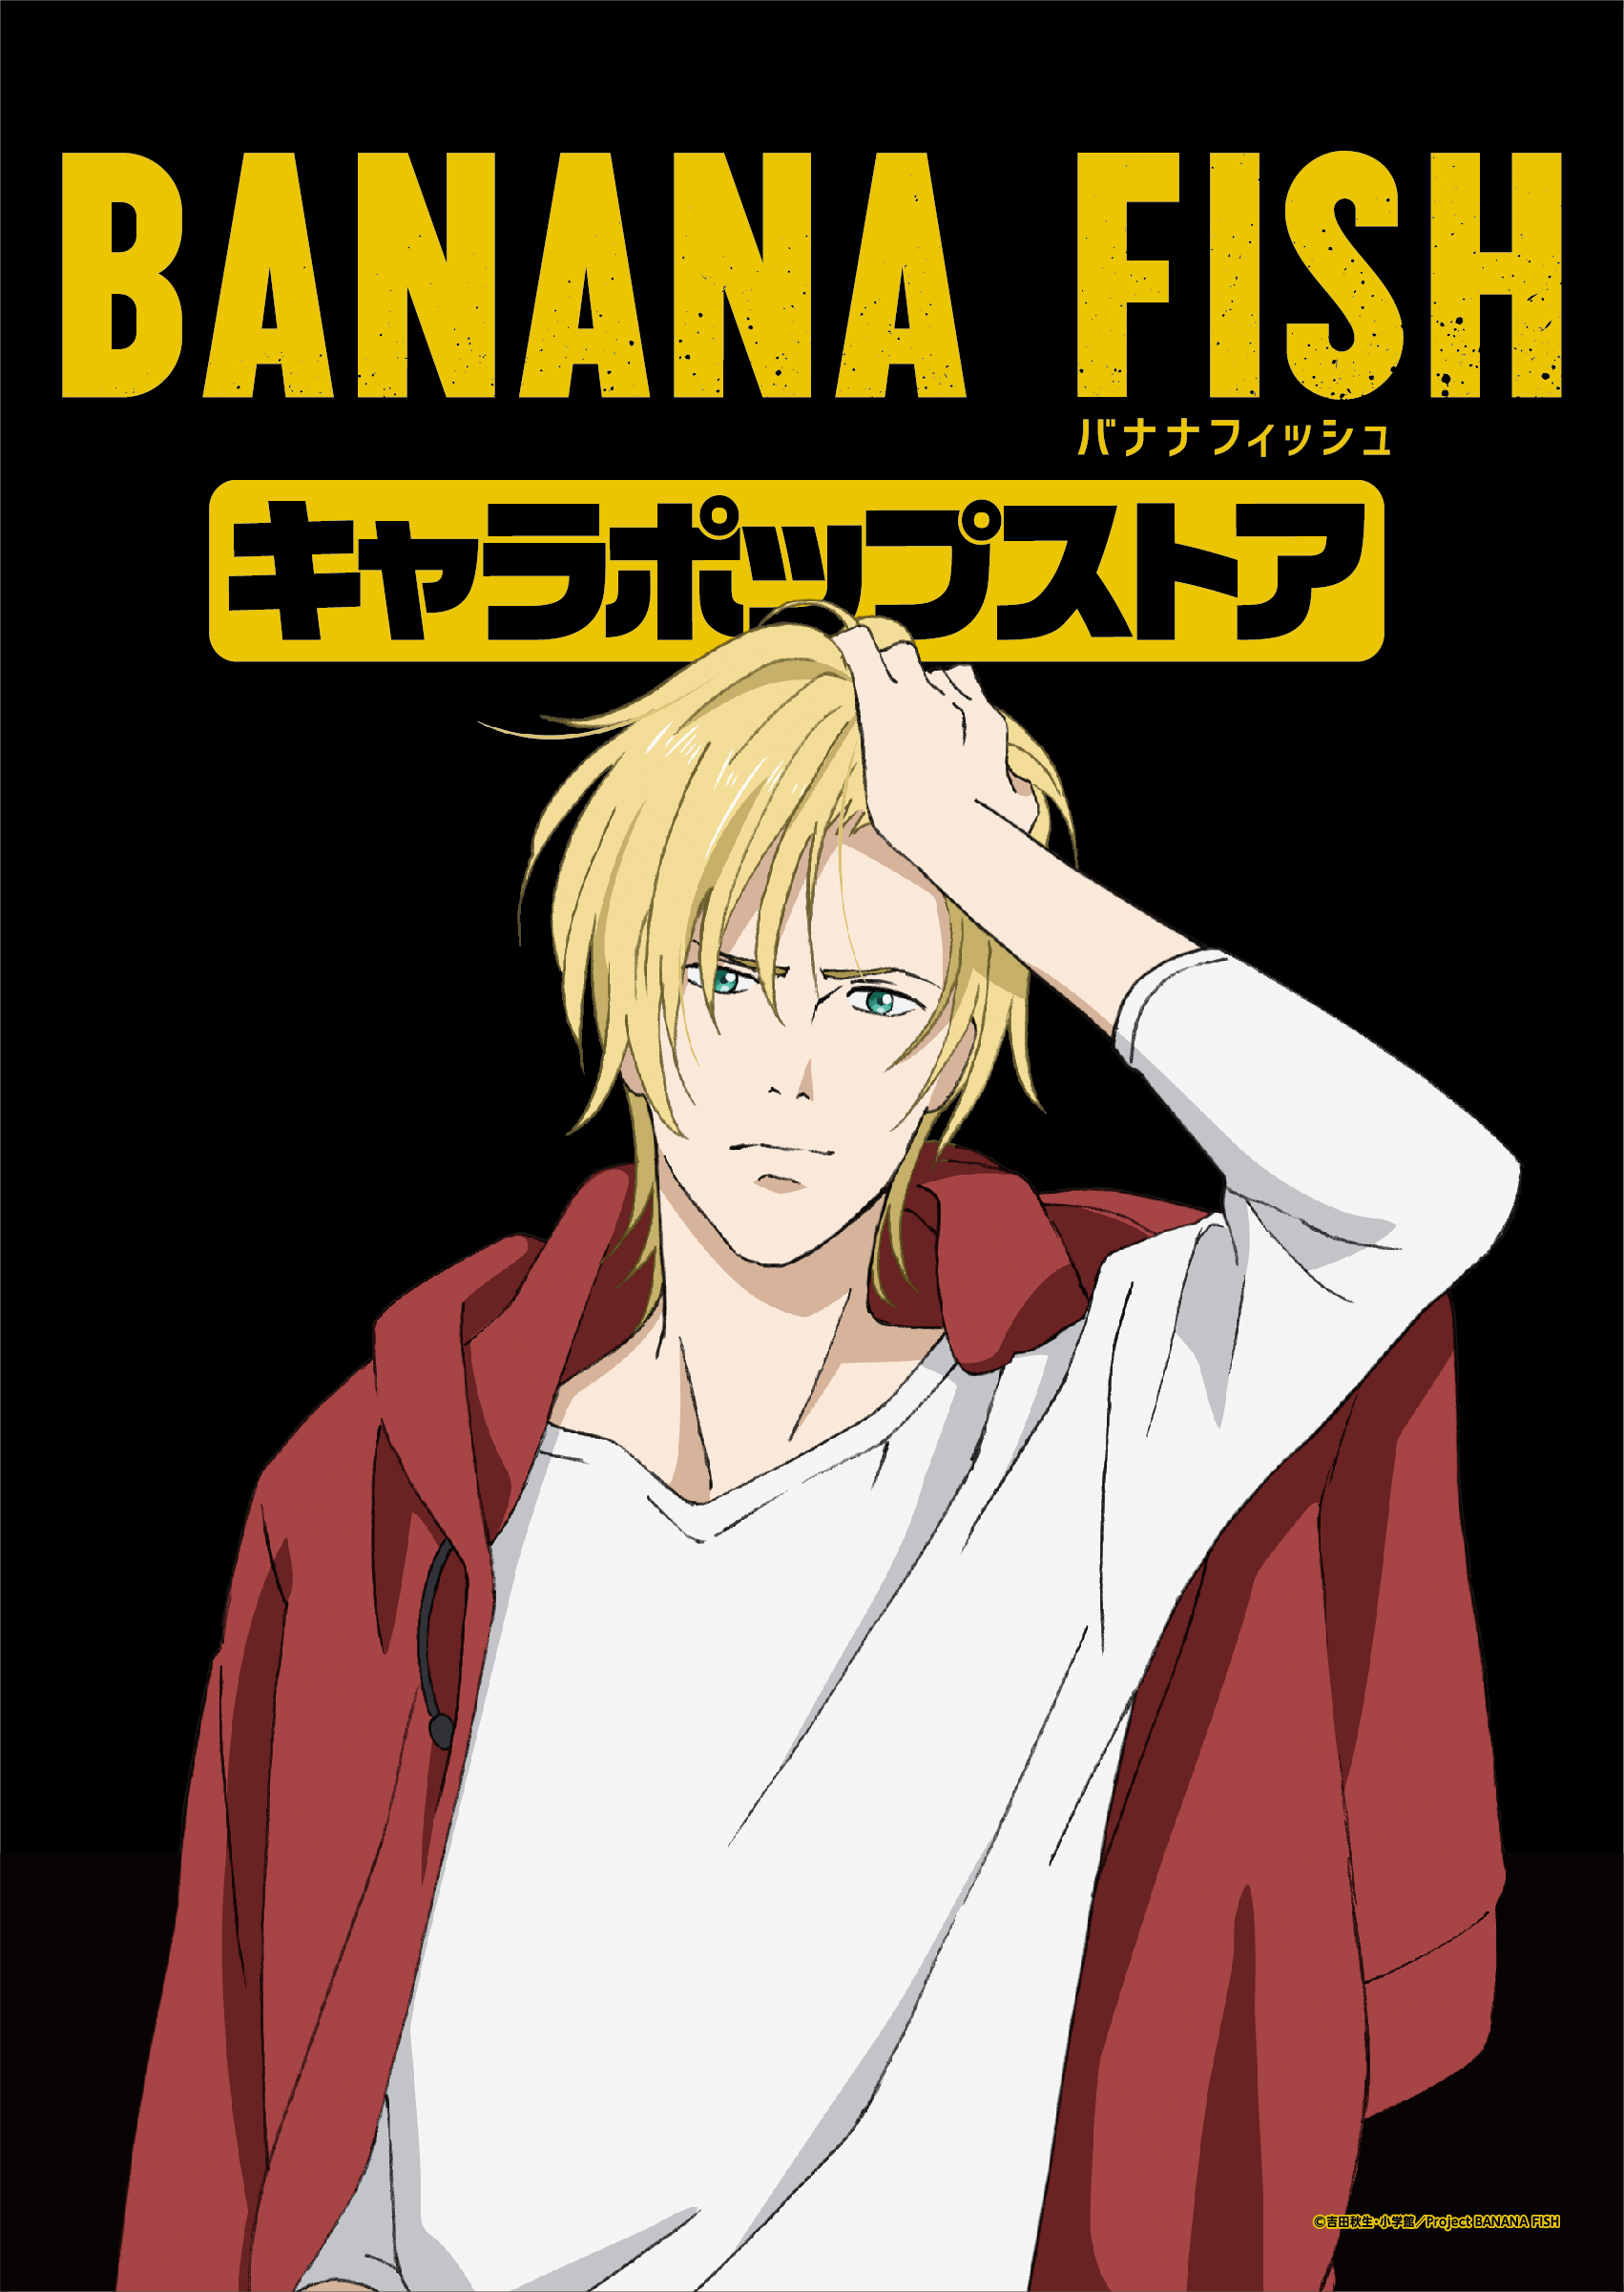 テレビアニメ Banana Fish 初のオンリーショップが登場 限定描き下ろしイラストのグッズ販売やミニゲームが楽しめる Banana Fish キャラポップストア バンダイナムコアミューズメントのプレスリリース